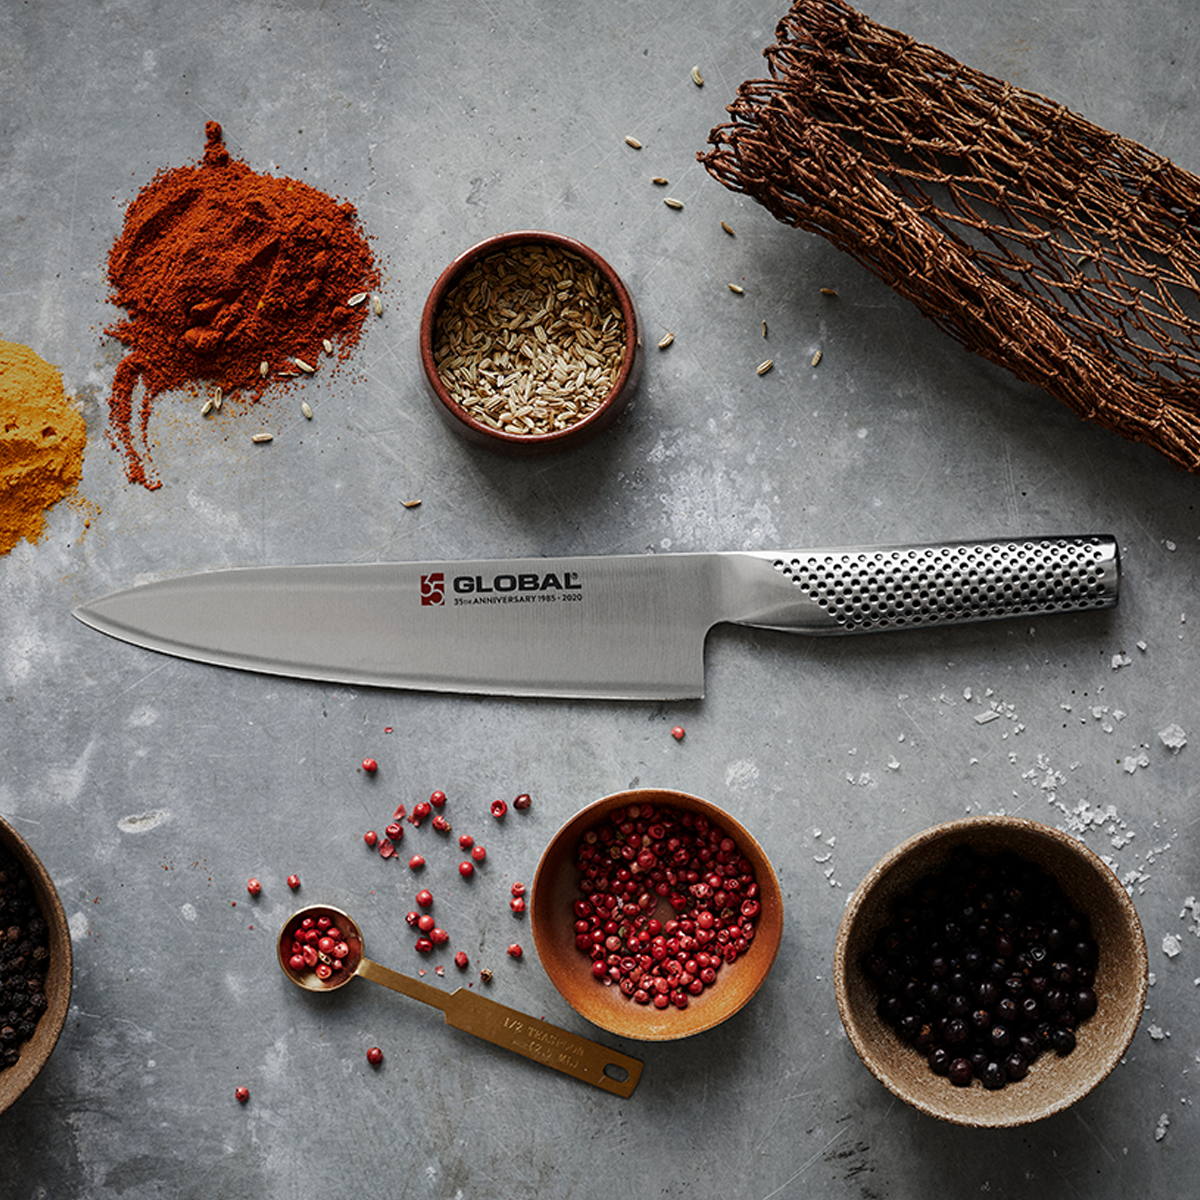 Sølv Global kjøkkenkniv